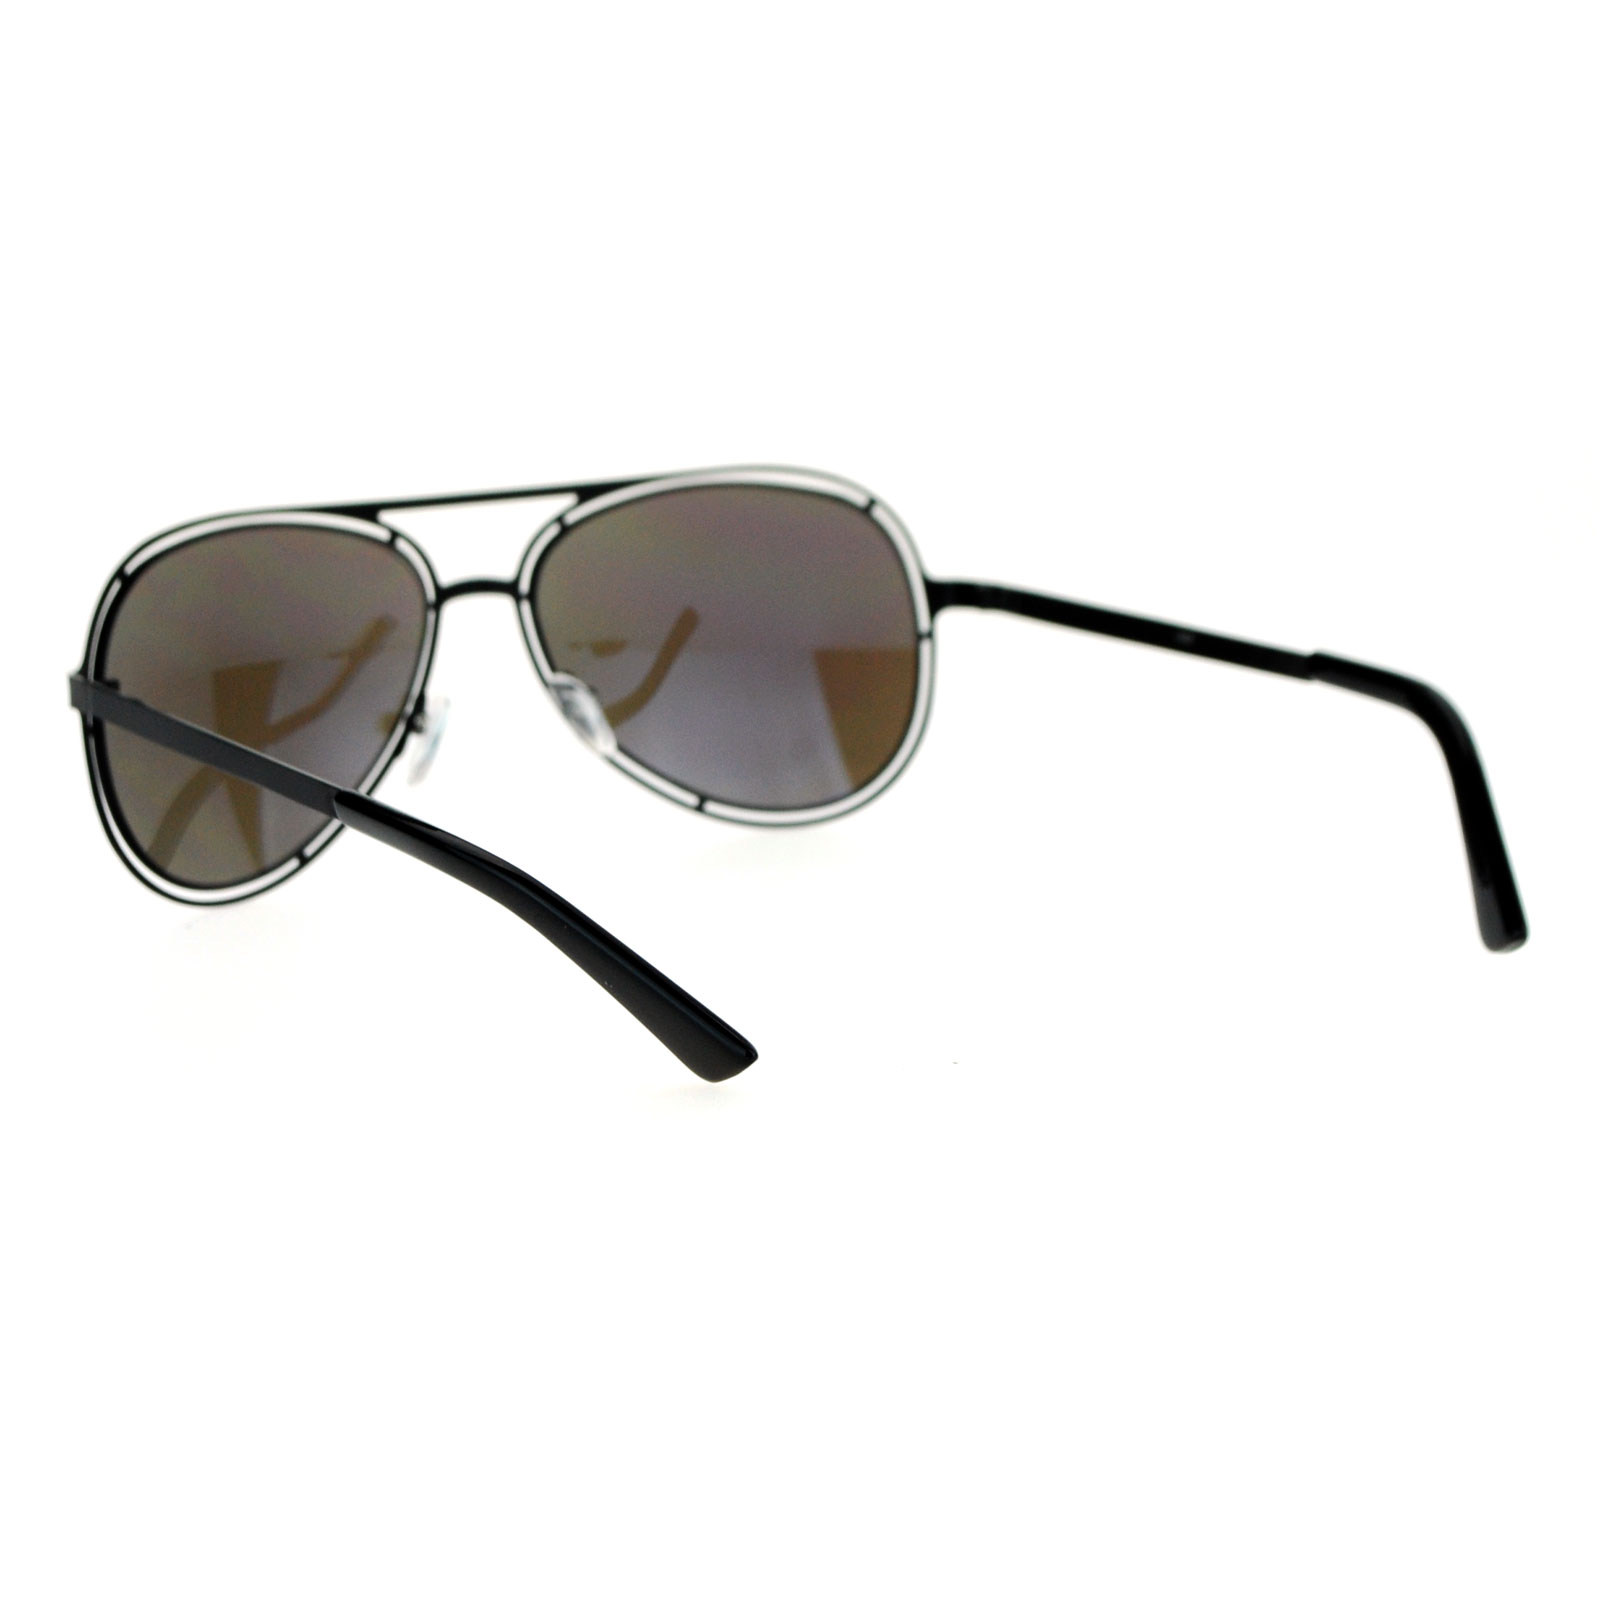 SA106 Unique Mens Futuristic Metal Sunglasses | eBay